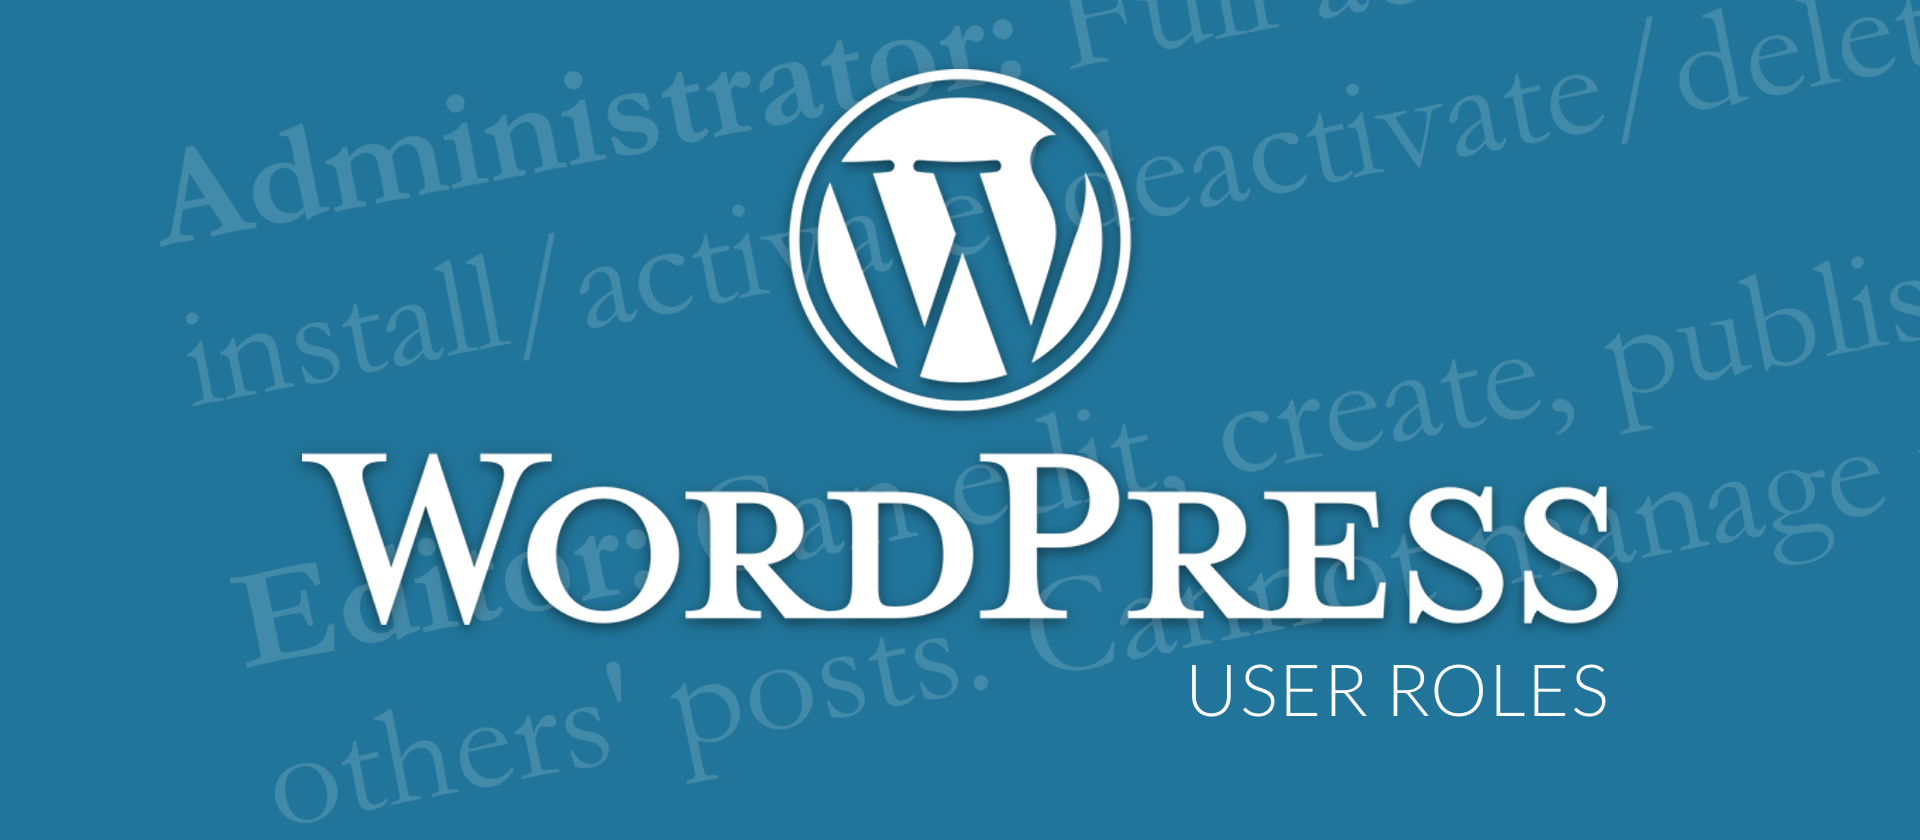 WordPress User Roles